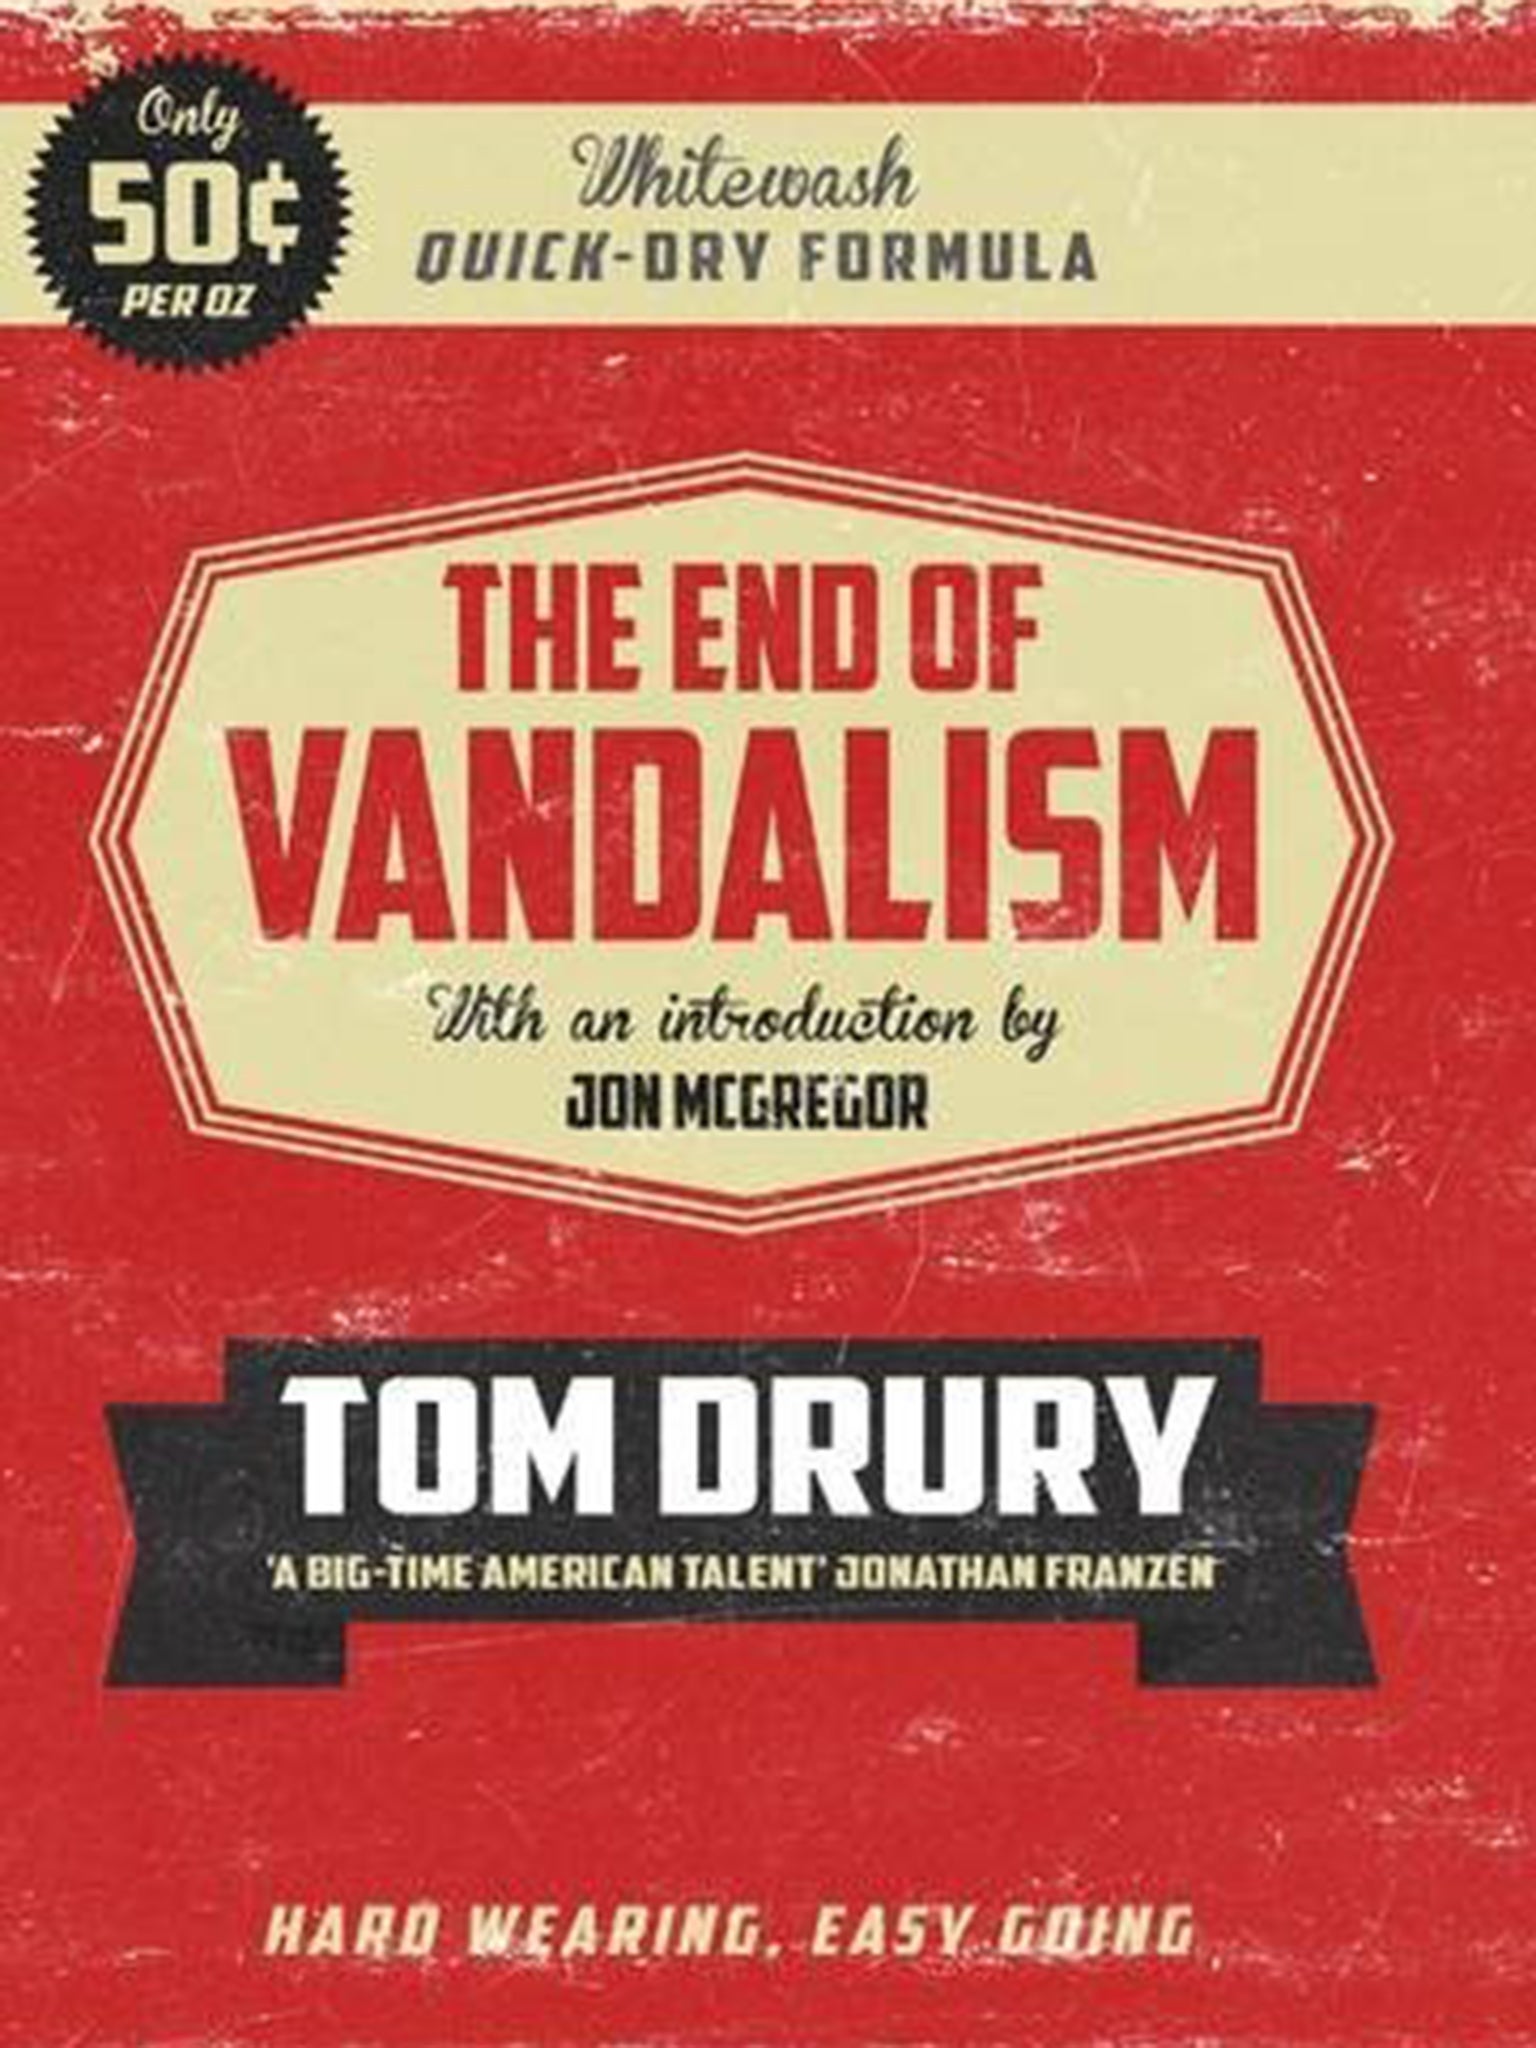 The End of Vandalism by Tom Drury